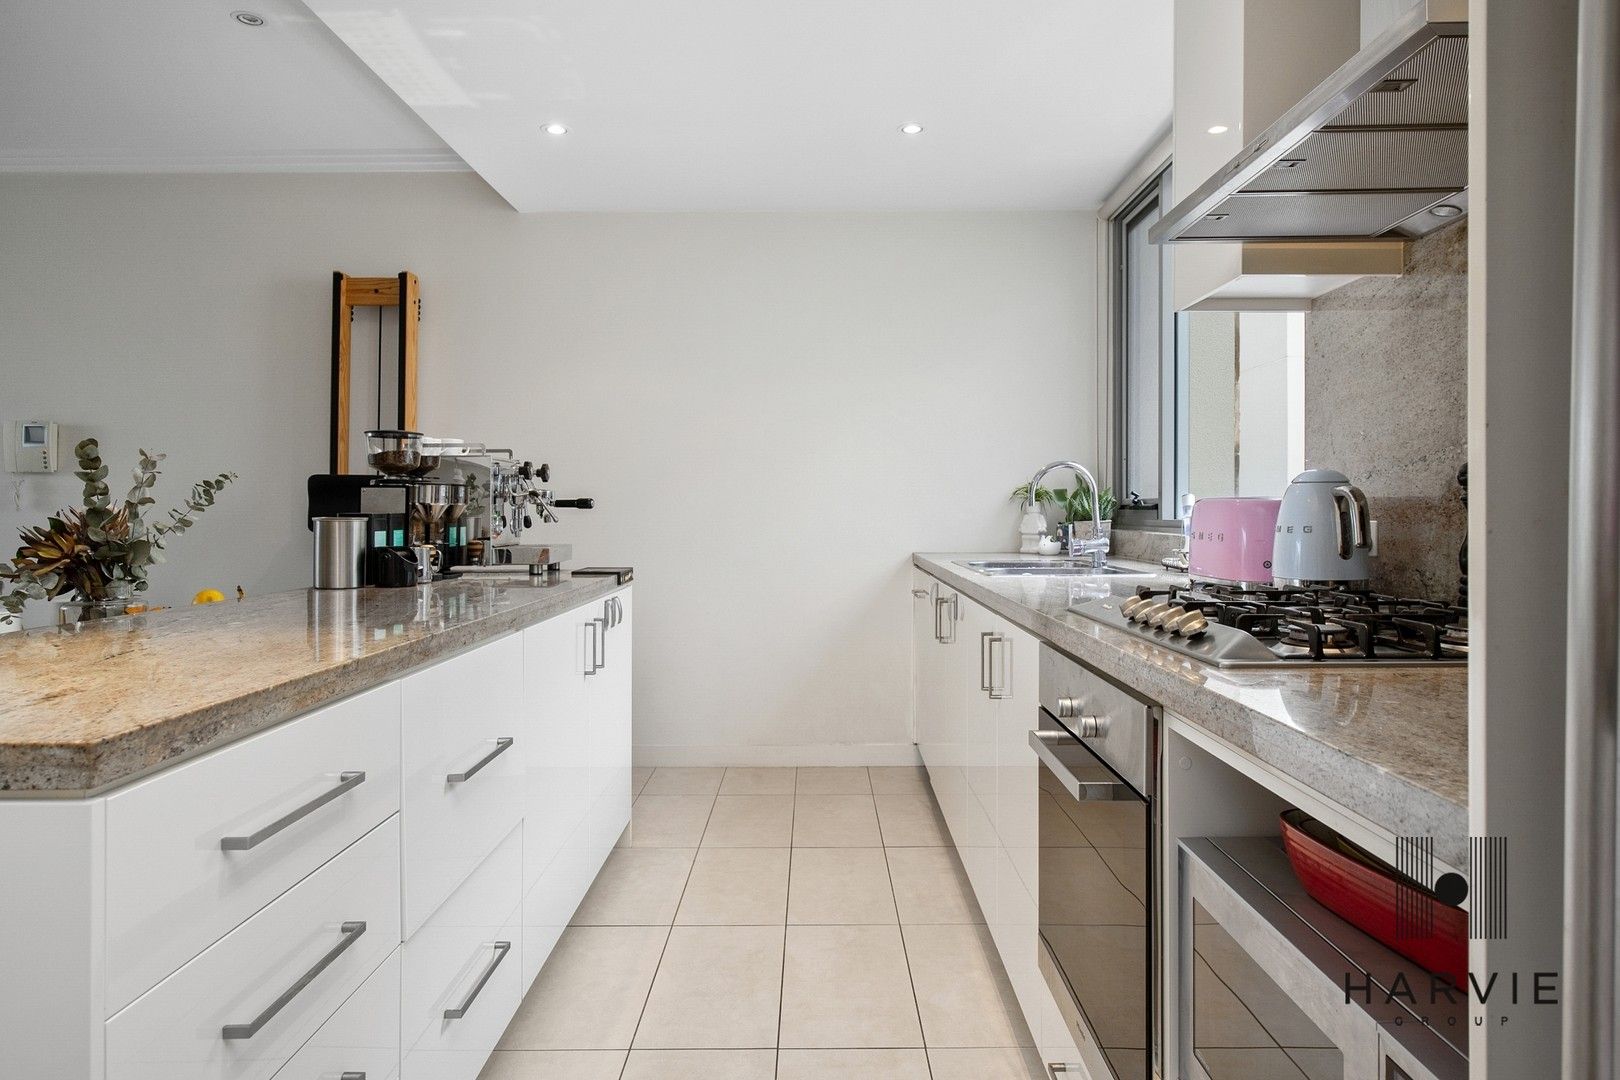 2 bedrooms Apartment / Unit / Flat in C203/2 Eulbertie Avenue WARRAWEE NSW, 2074